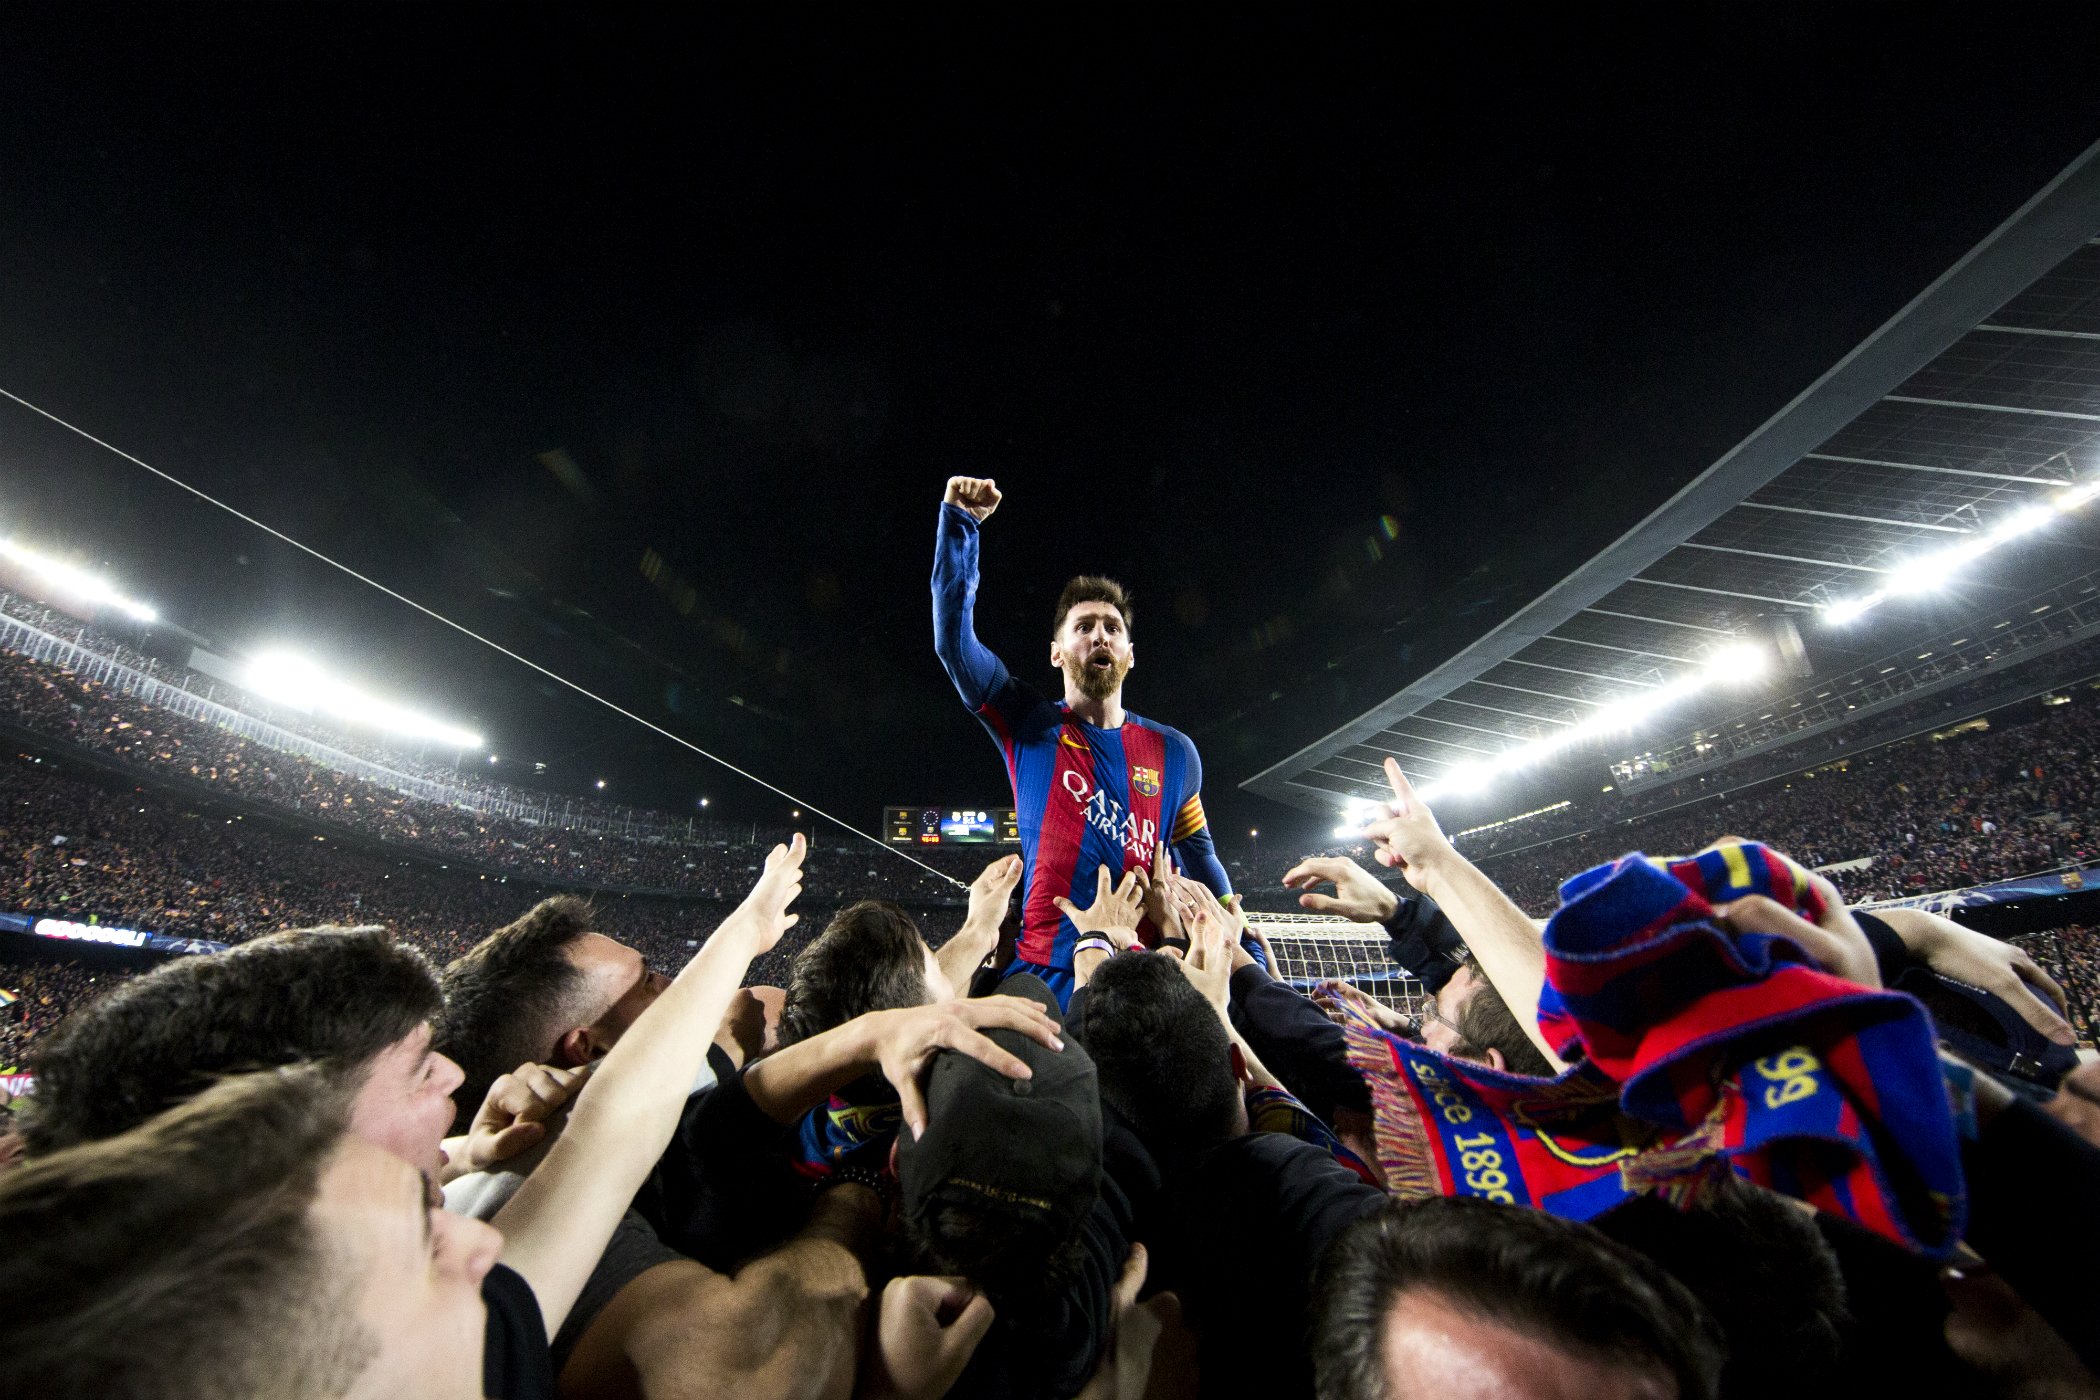 La historia detrás de la eufórica foto de Messi